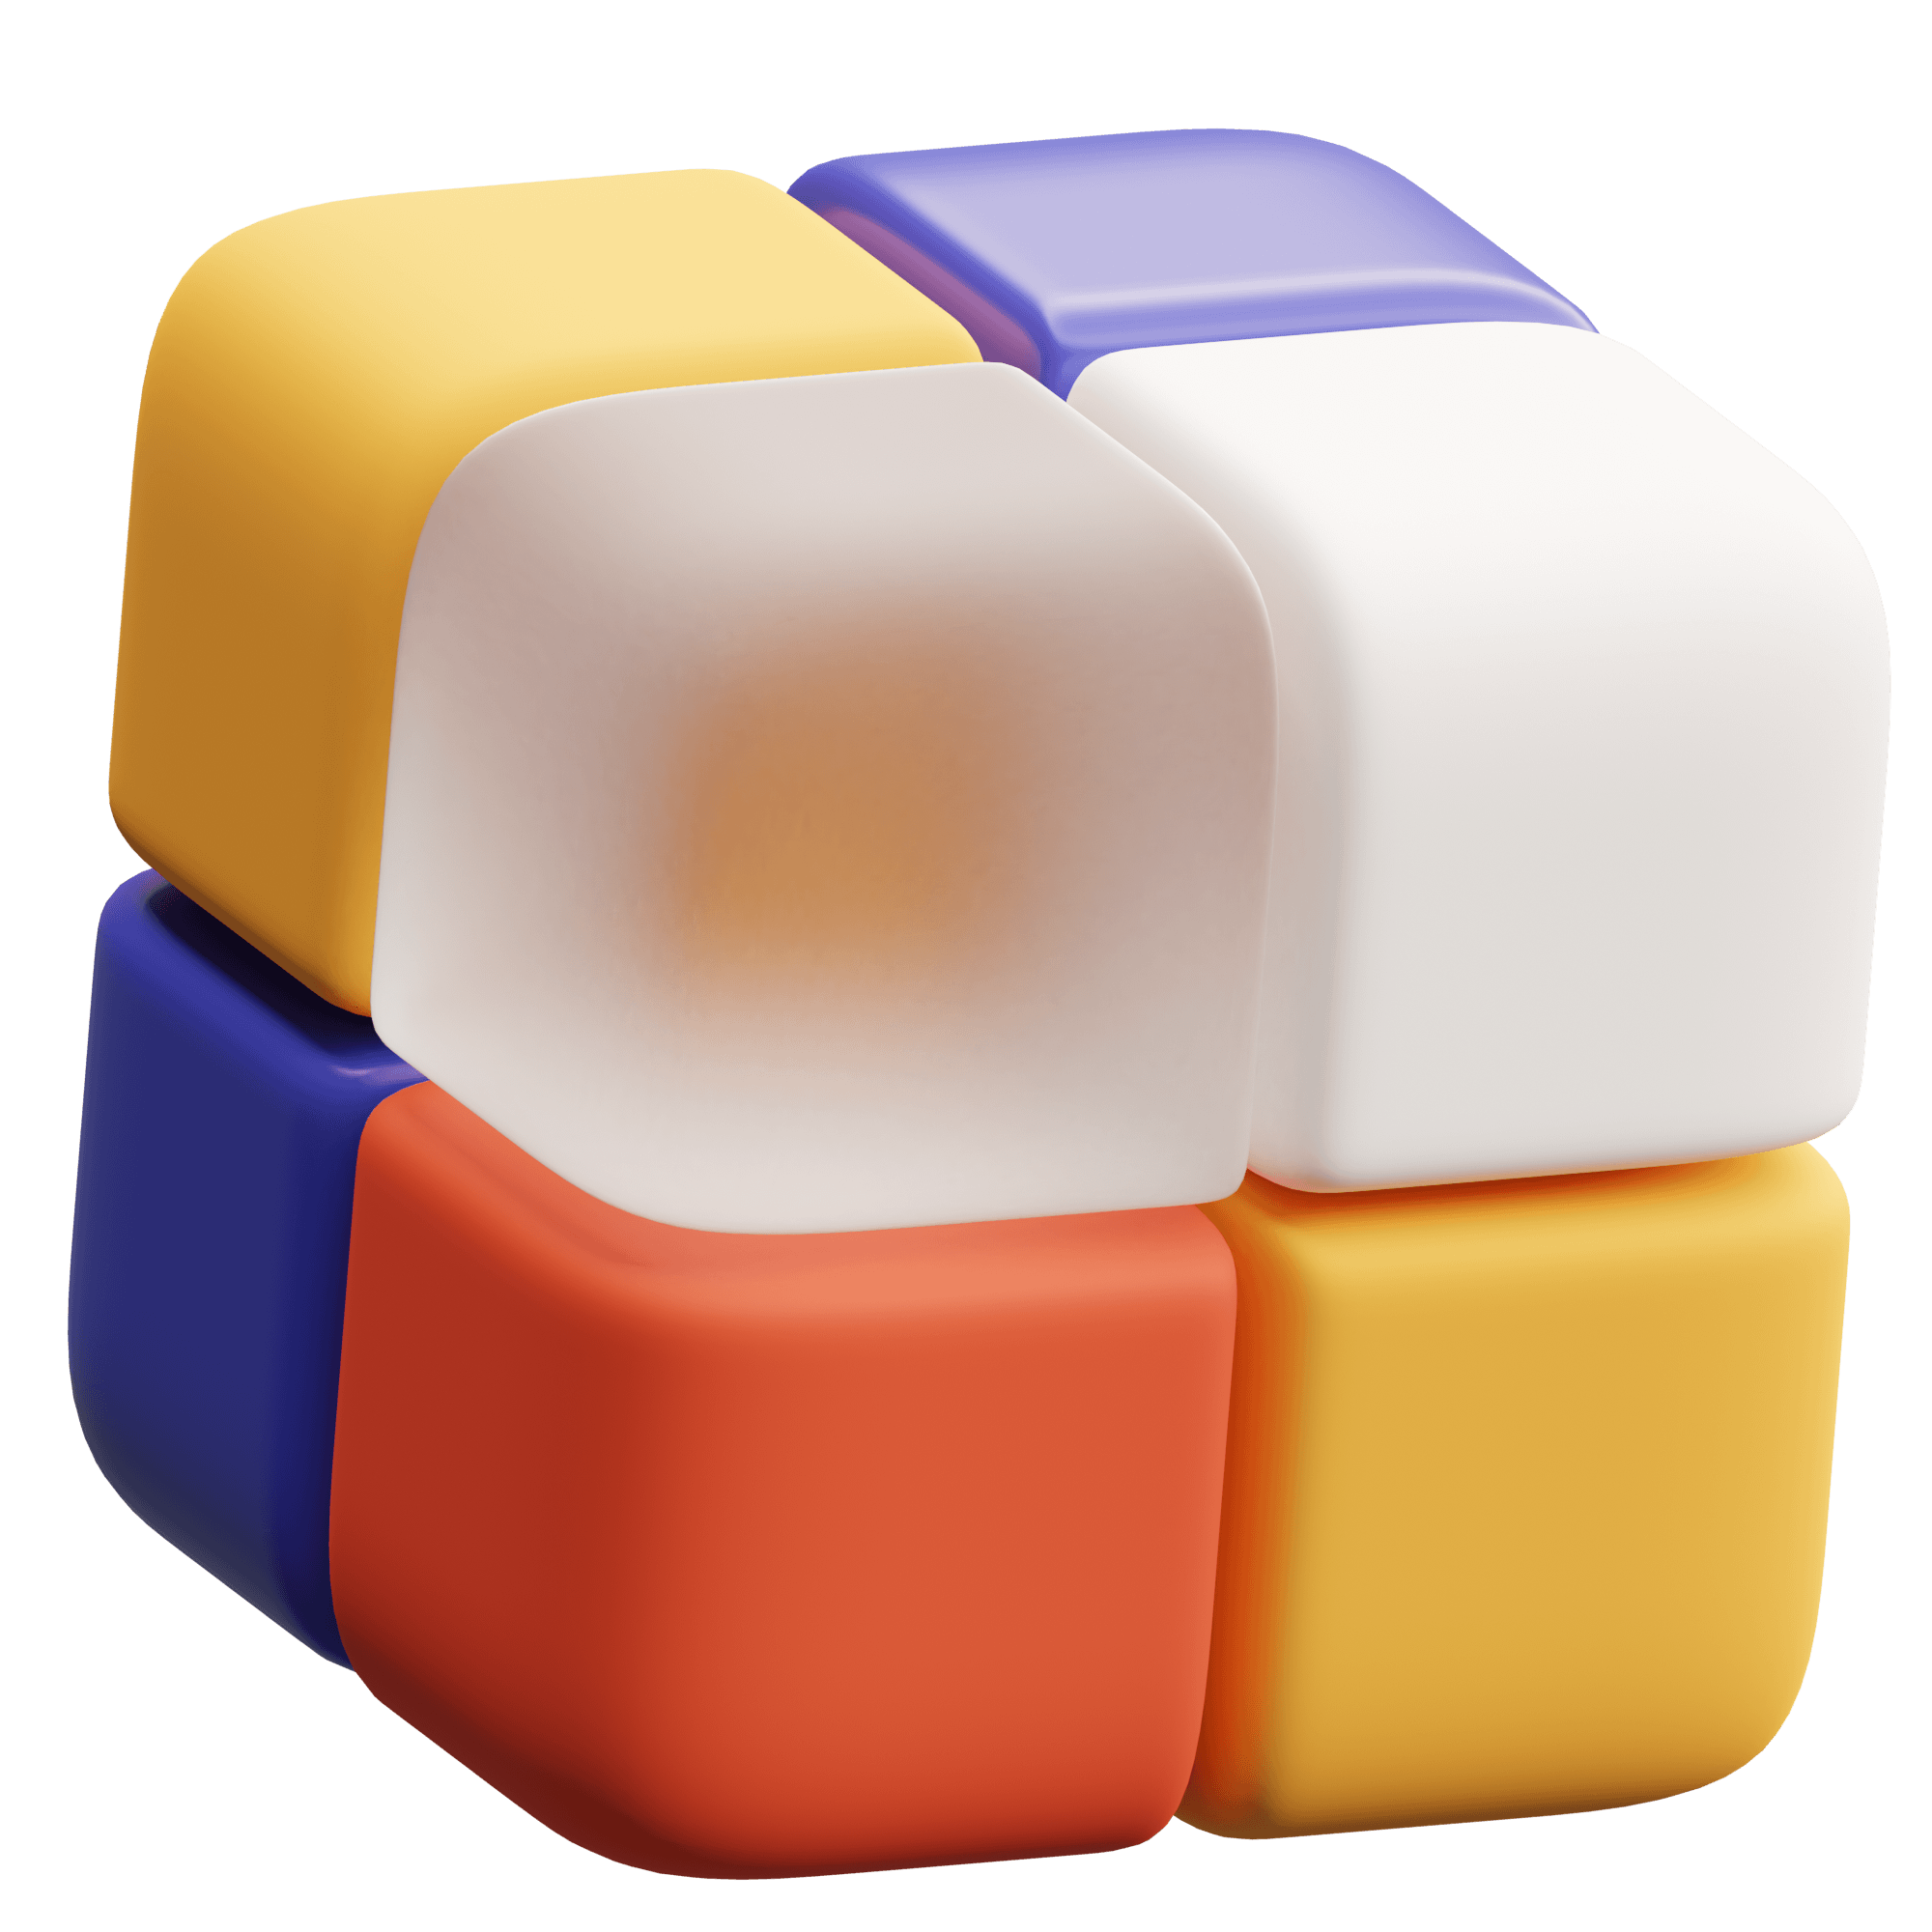 cube a